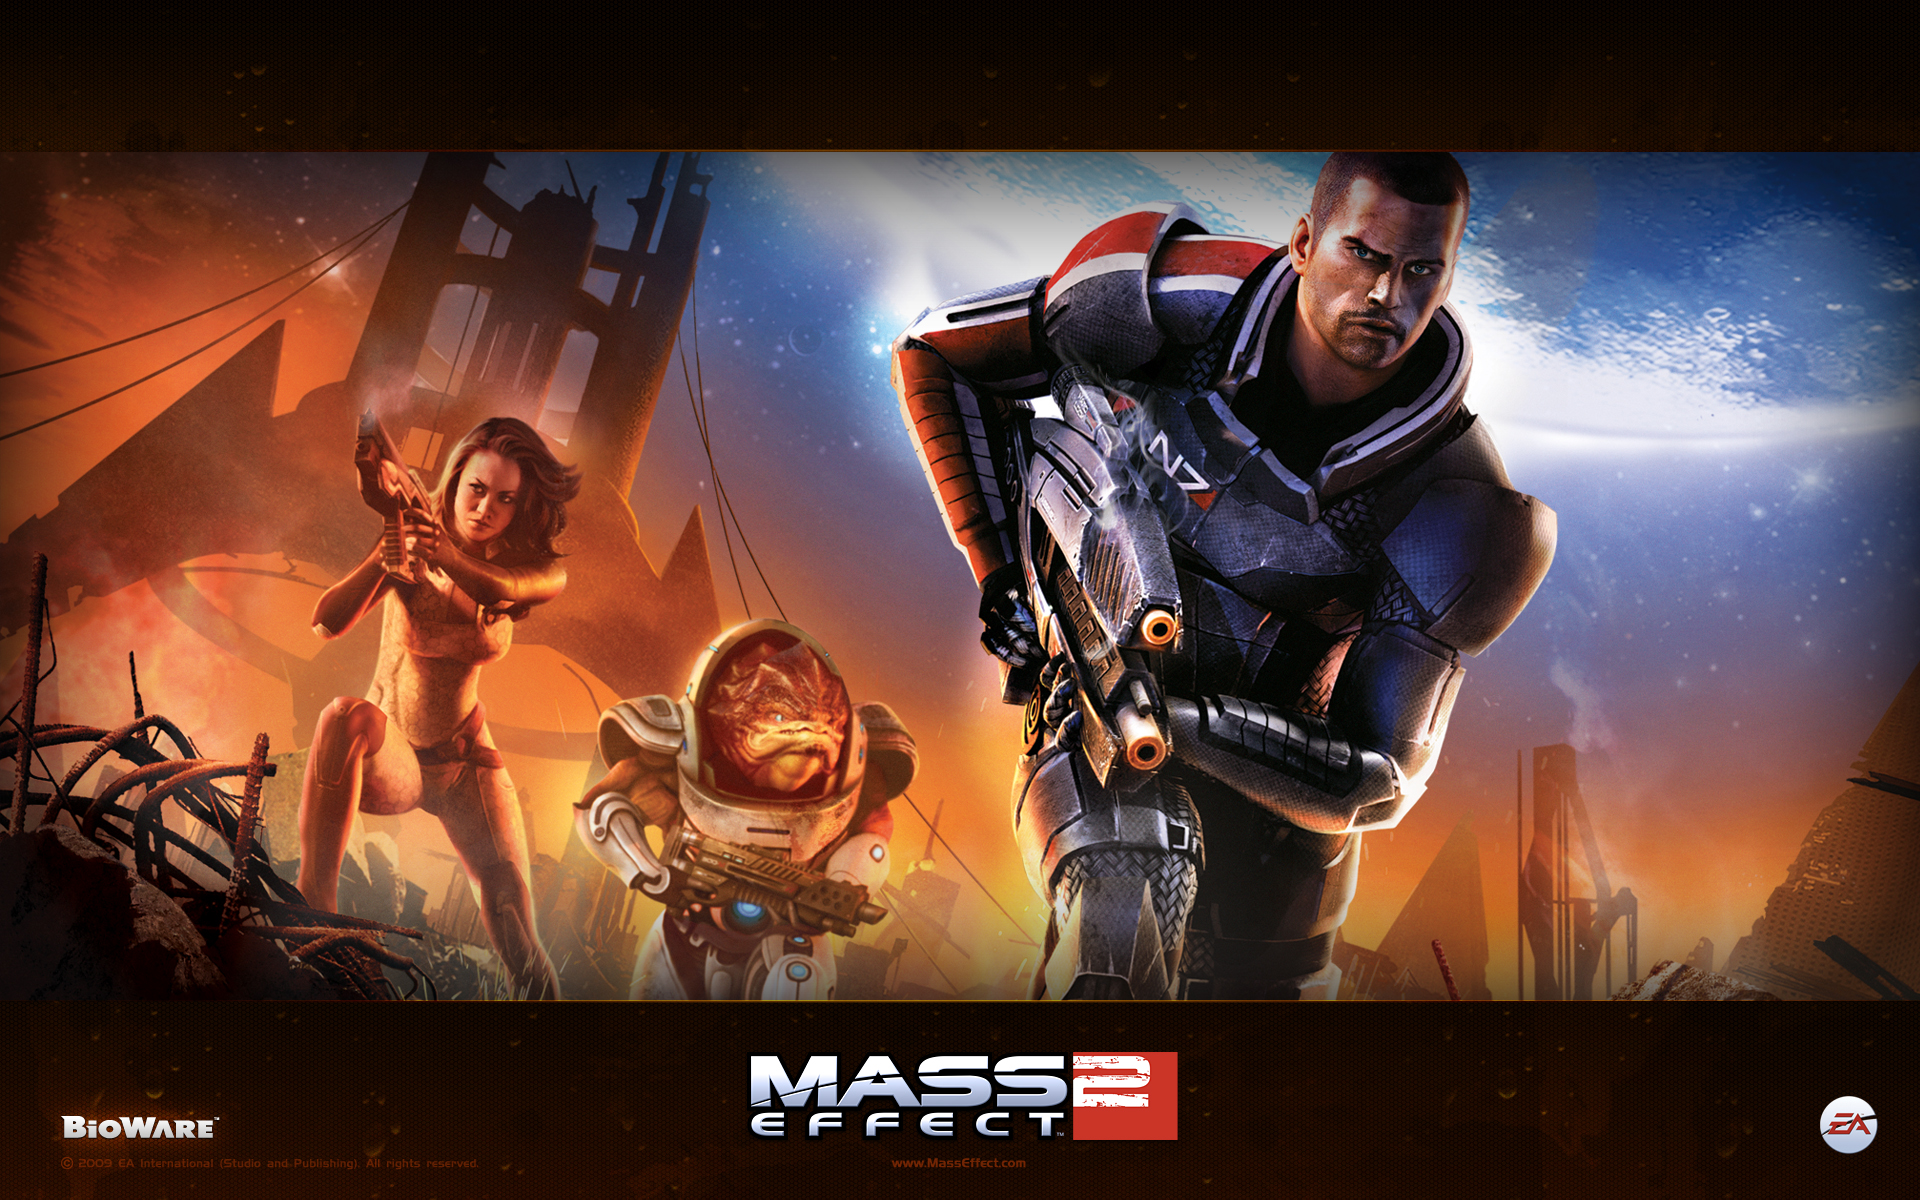 Mass Effect, Miranda Lawson, Commander Shepard, Grunt (Mass Effect) - desktop wallpaper